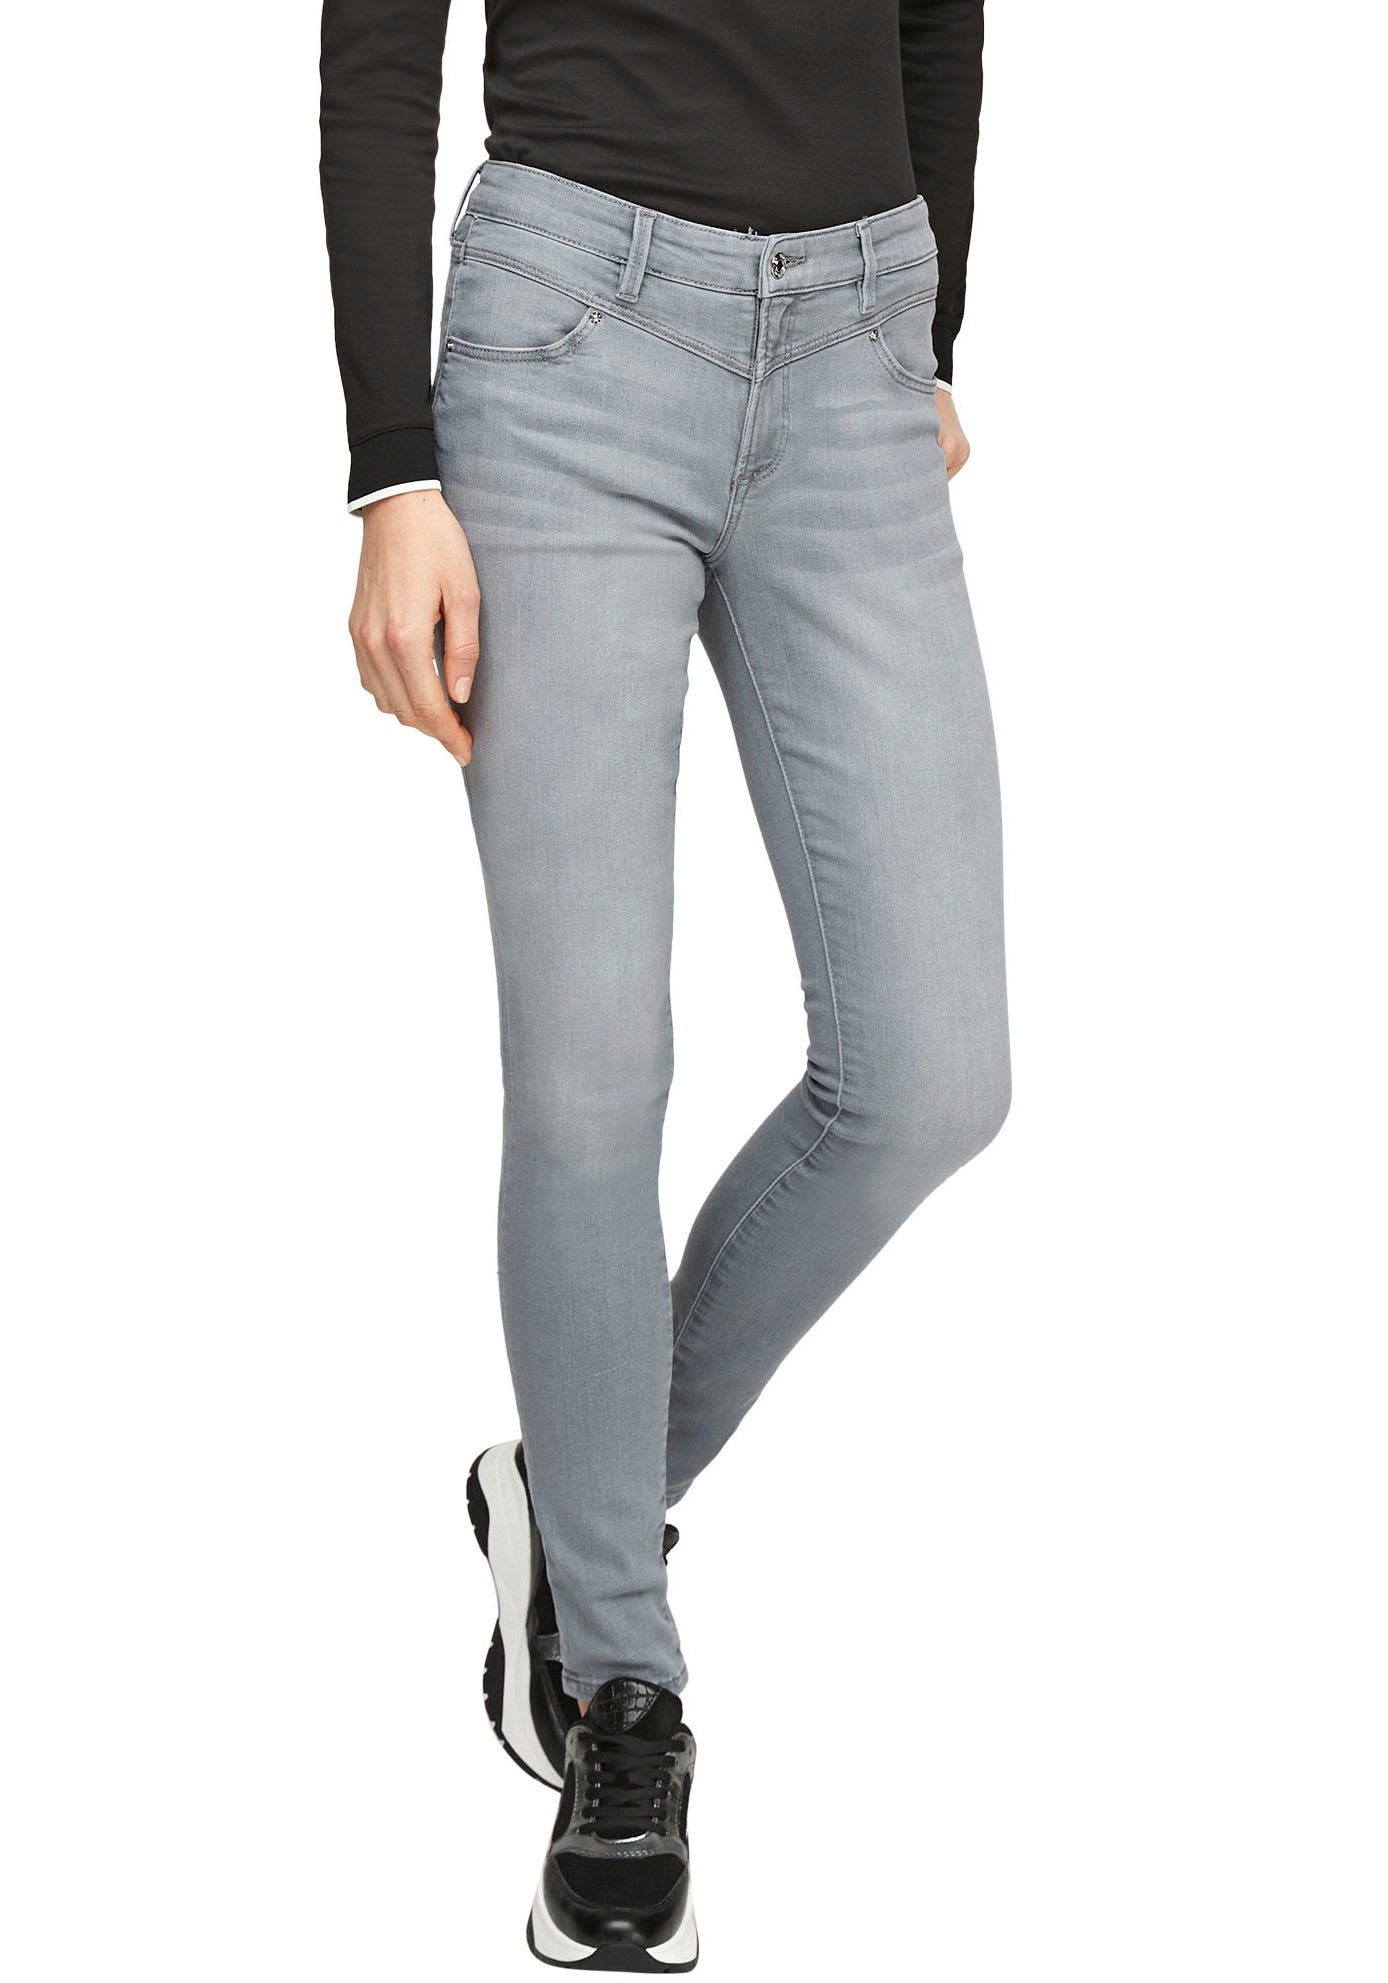 Jeans Online Kaufen Jeanshosen Trends Otto